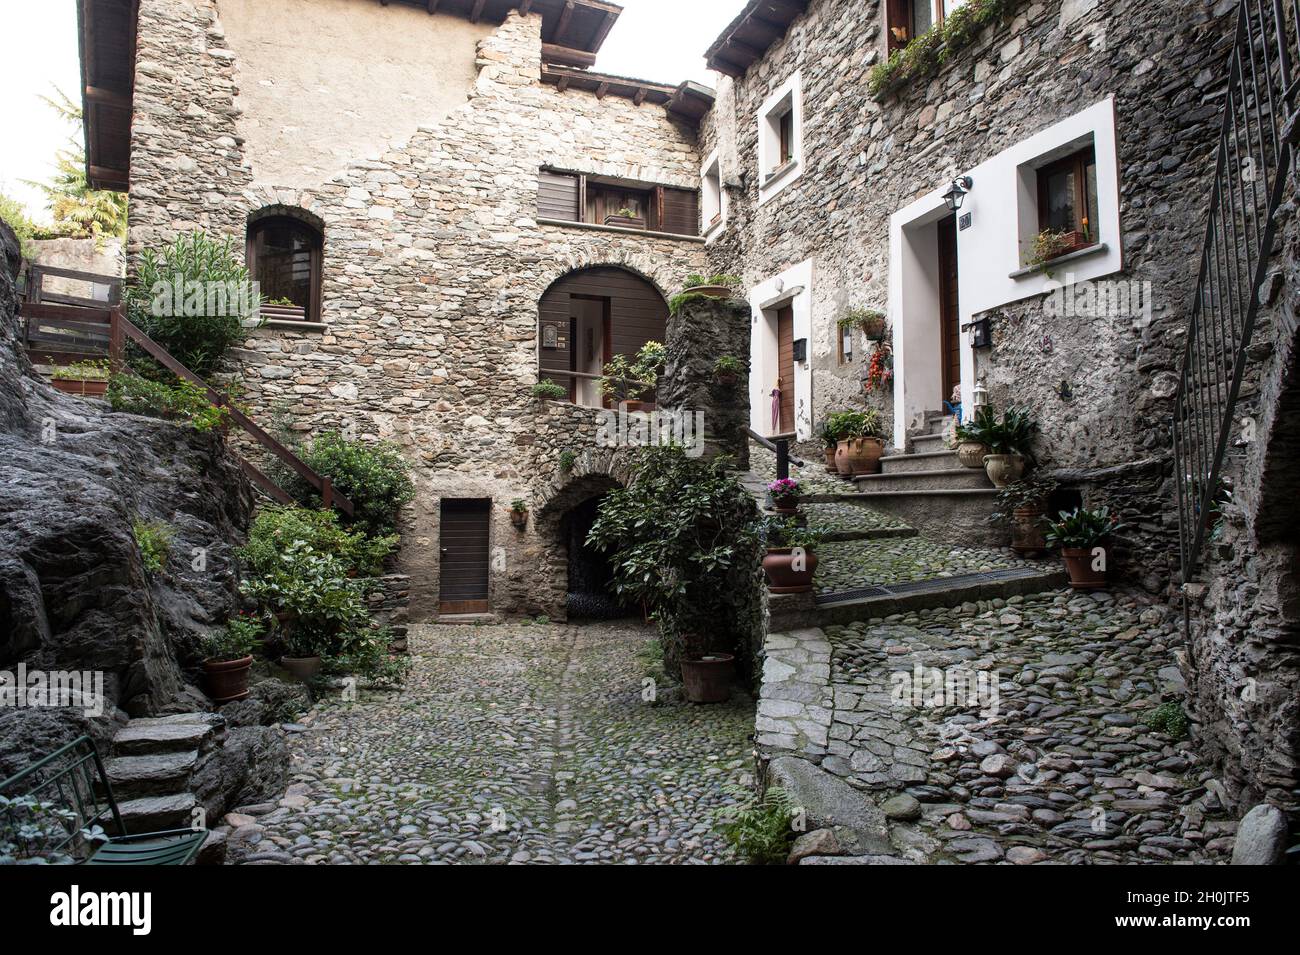 Italy, Lombardy, Sondrio, Old Town Stock Photo